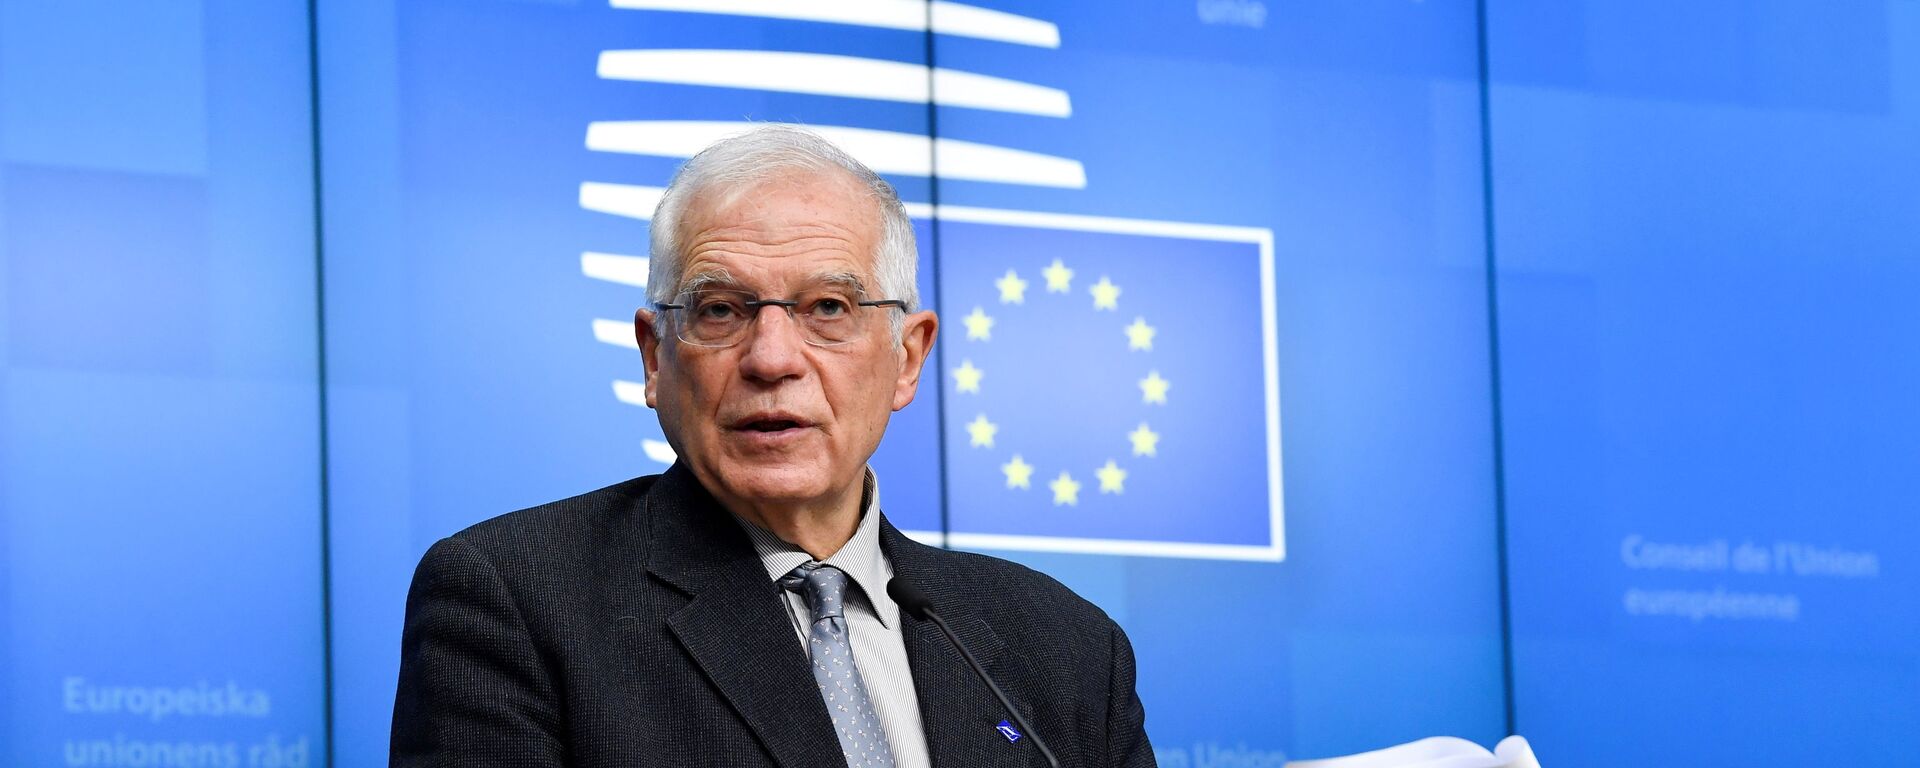 Josep Borrell, alto representante para la Política Exterior de la UE - Sputnik Mundo, 1920, 21.03.2021